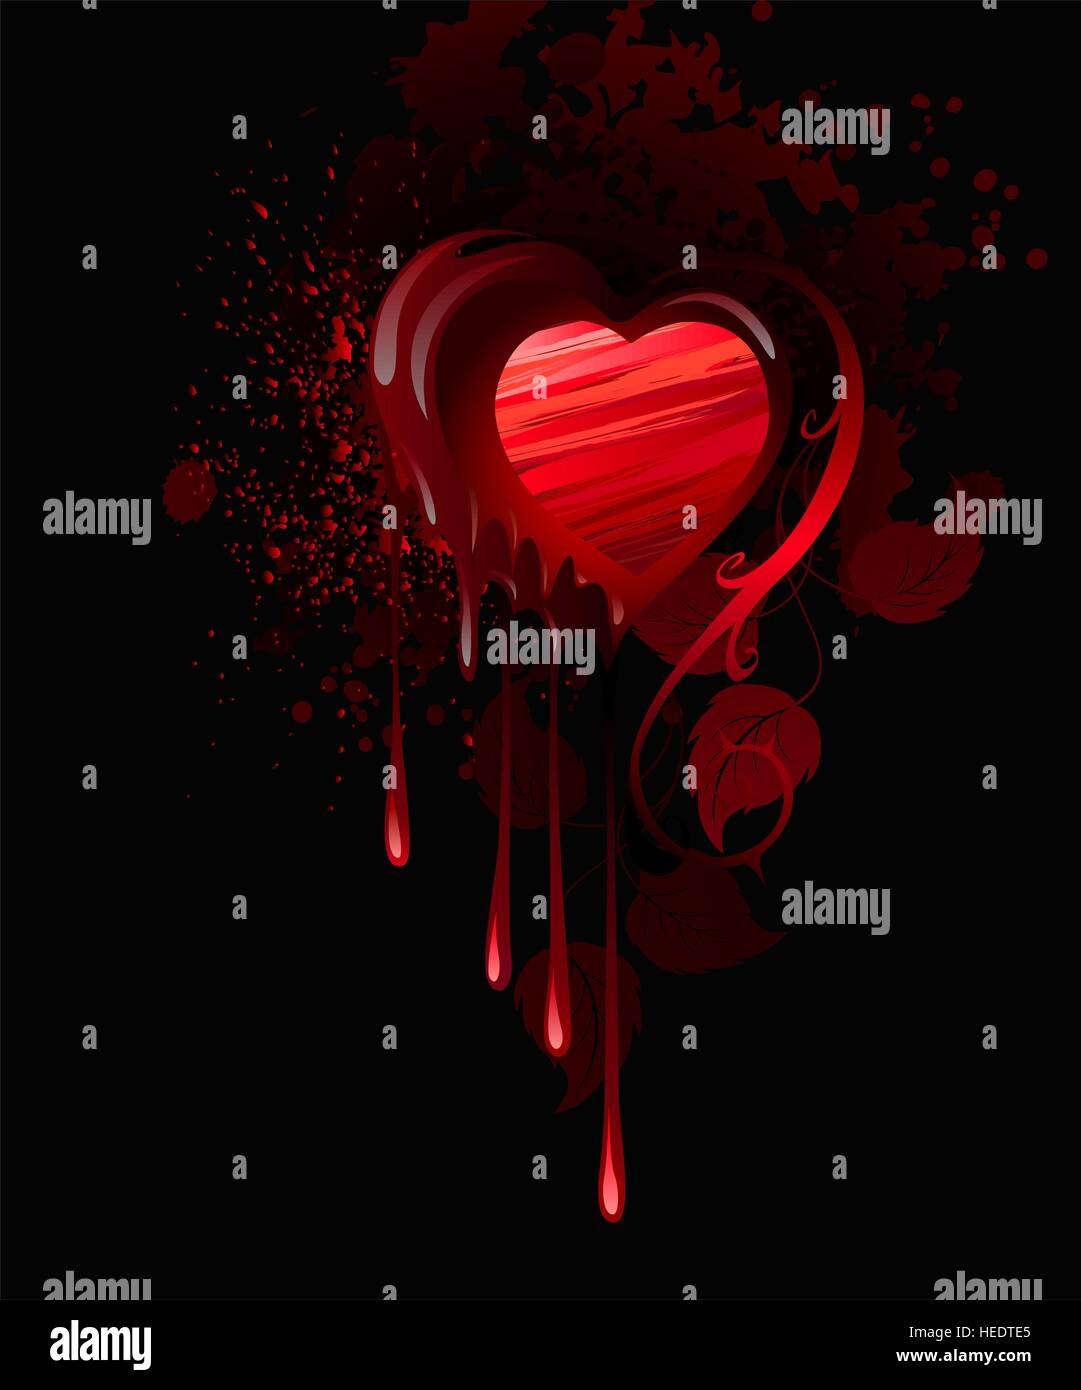 Cœur, dessiné dans la peinture rouge et décoré avec des feuilles de roses sur un fond sombre. Illustration de Vecteur